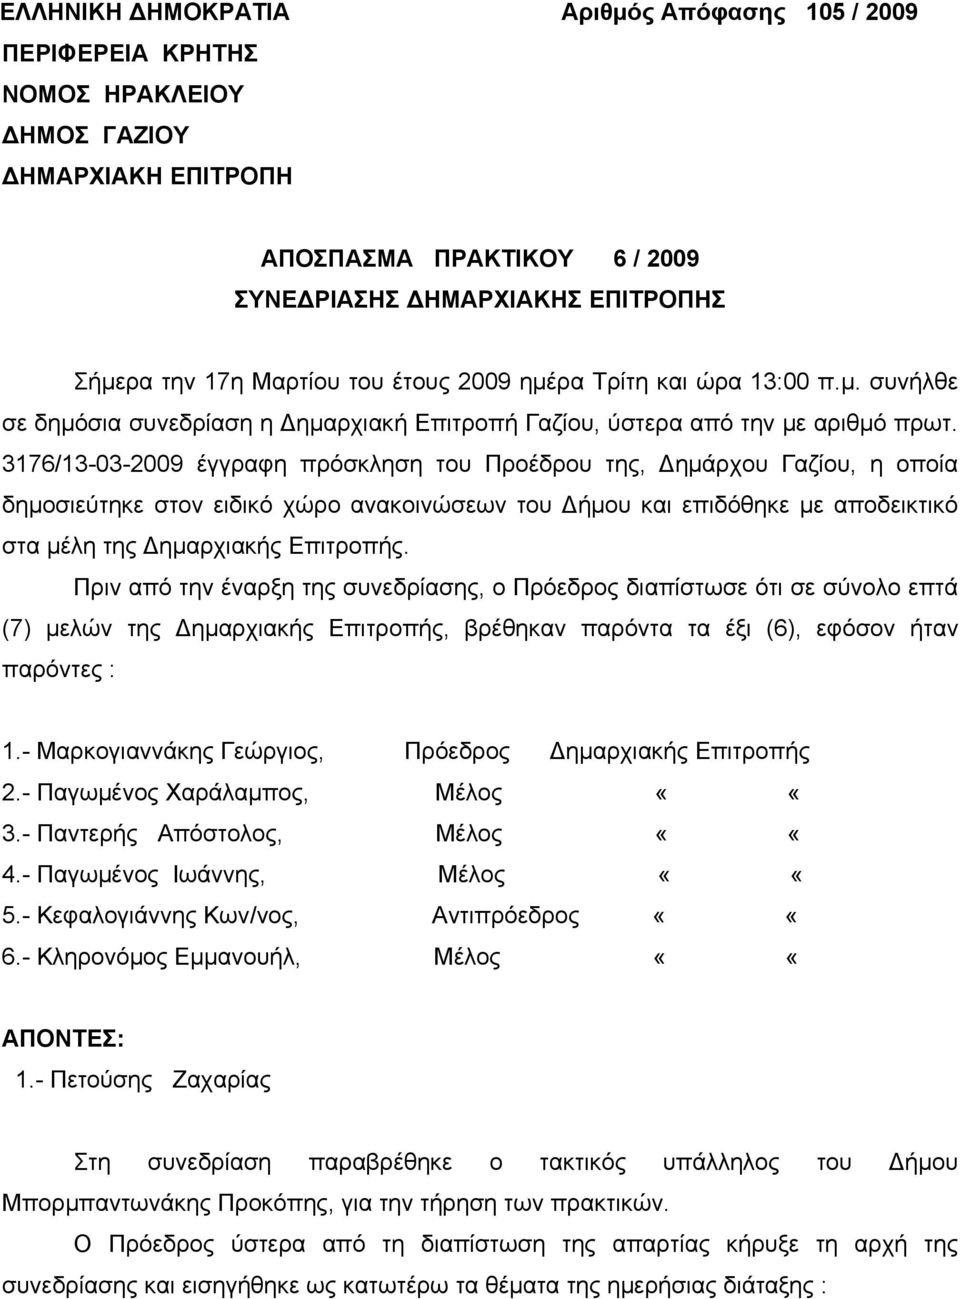 3176/13-03-2009 έγγραφη πρόσκληση του Προέδρου της, Δημάρχου Γαζίου, η οποία δημοσιεύτηκε στον ειδικό χώρο ανακοινώσεων του Δήμου και επιδόθηκε με αποδεικτικό στα μέλη της Δημαρχιακής Επιτροπής.